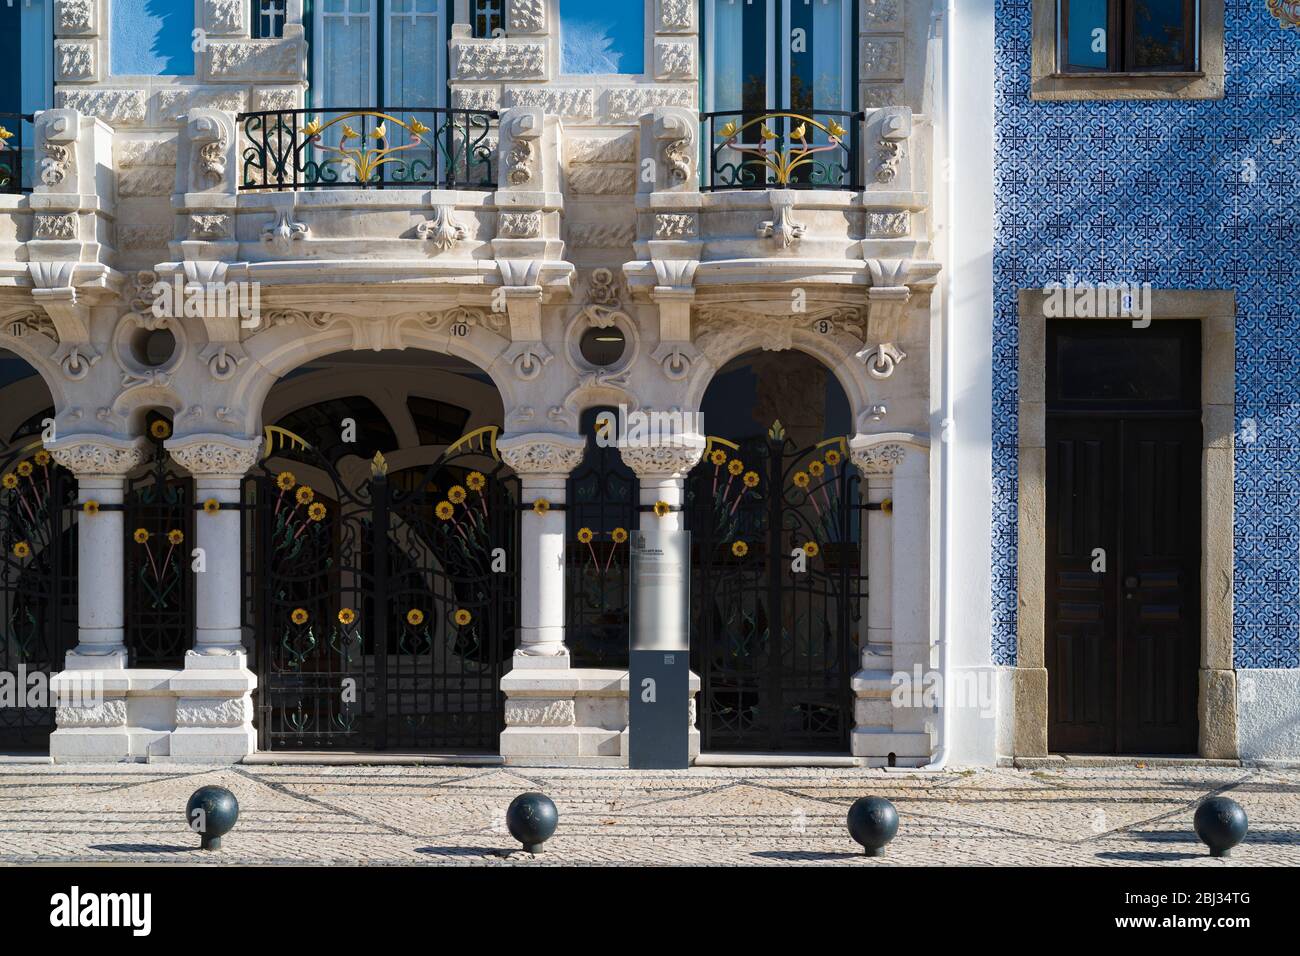 Le Museuu Arte Nova, décoré de balcons traditionnels, est un musée d'art moderne situé à Aveiro, au Portugal Banque D'Images